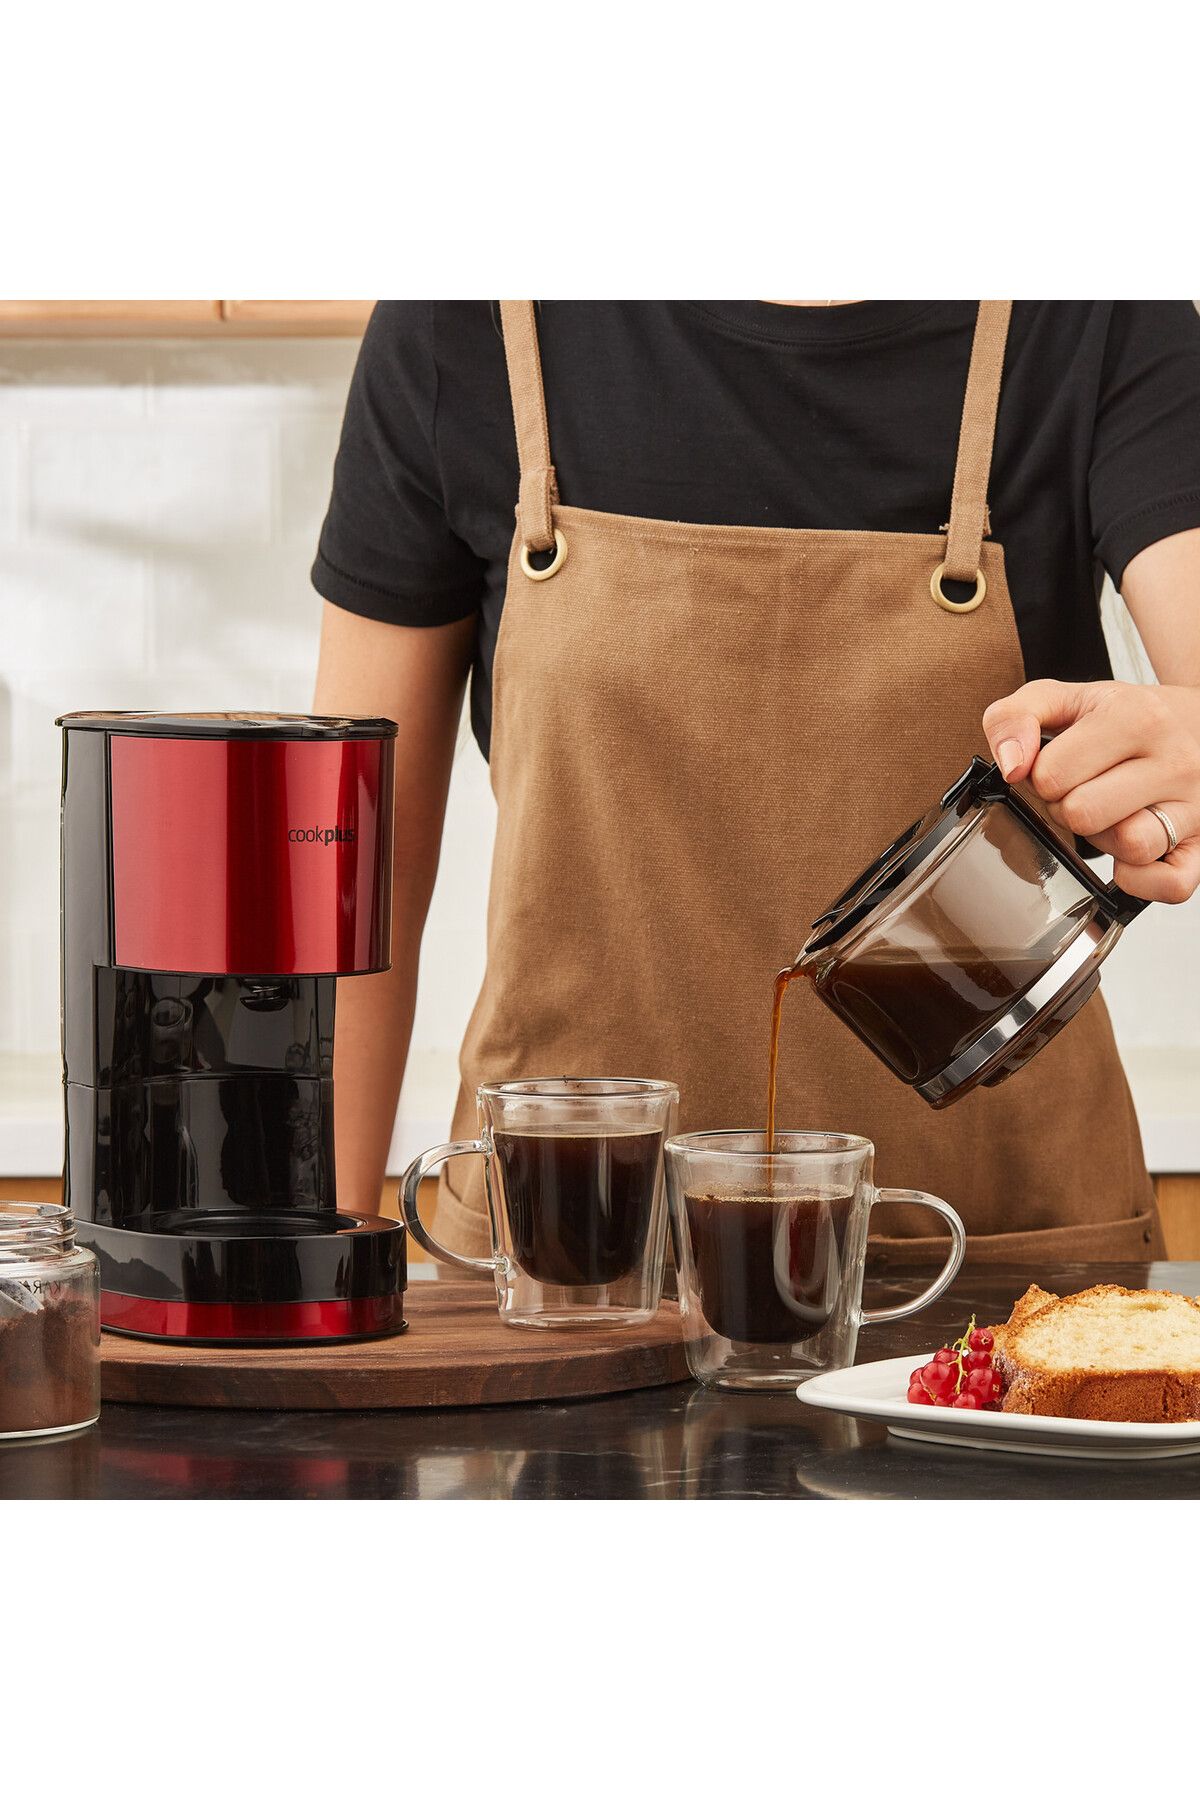 Cookplus Keyf Filtre Kahve Makinesi Red